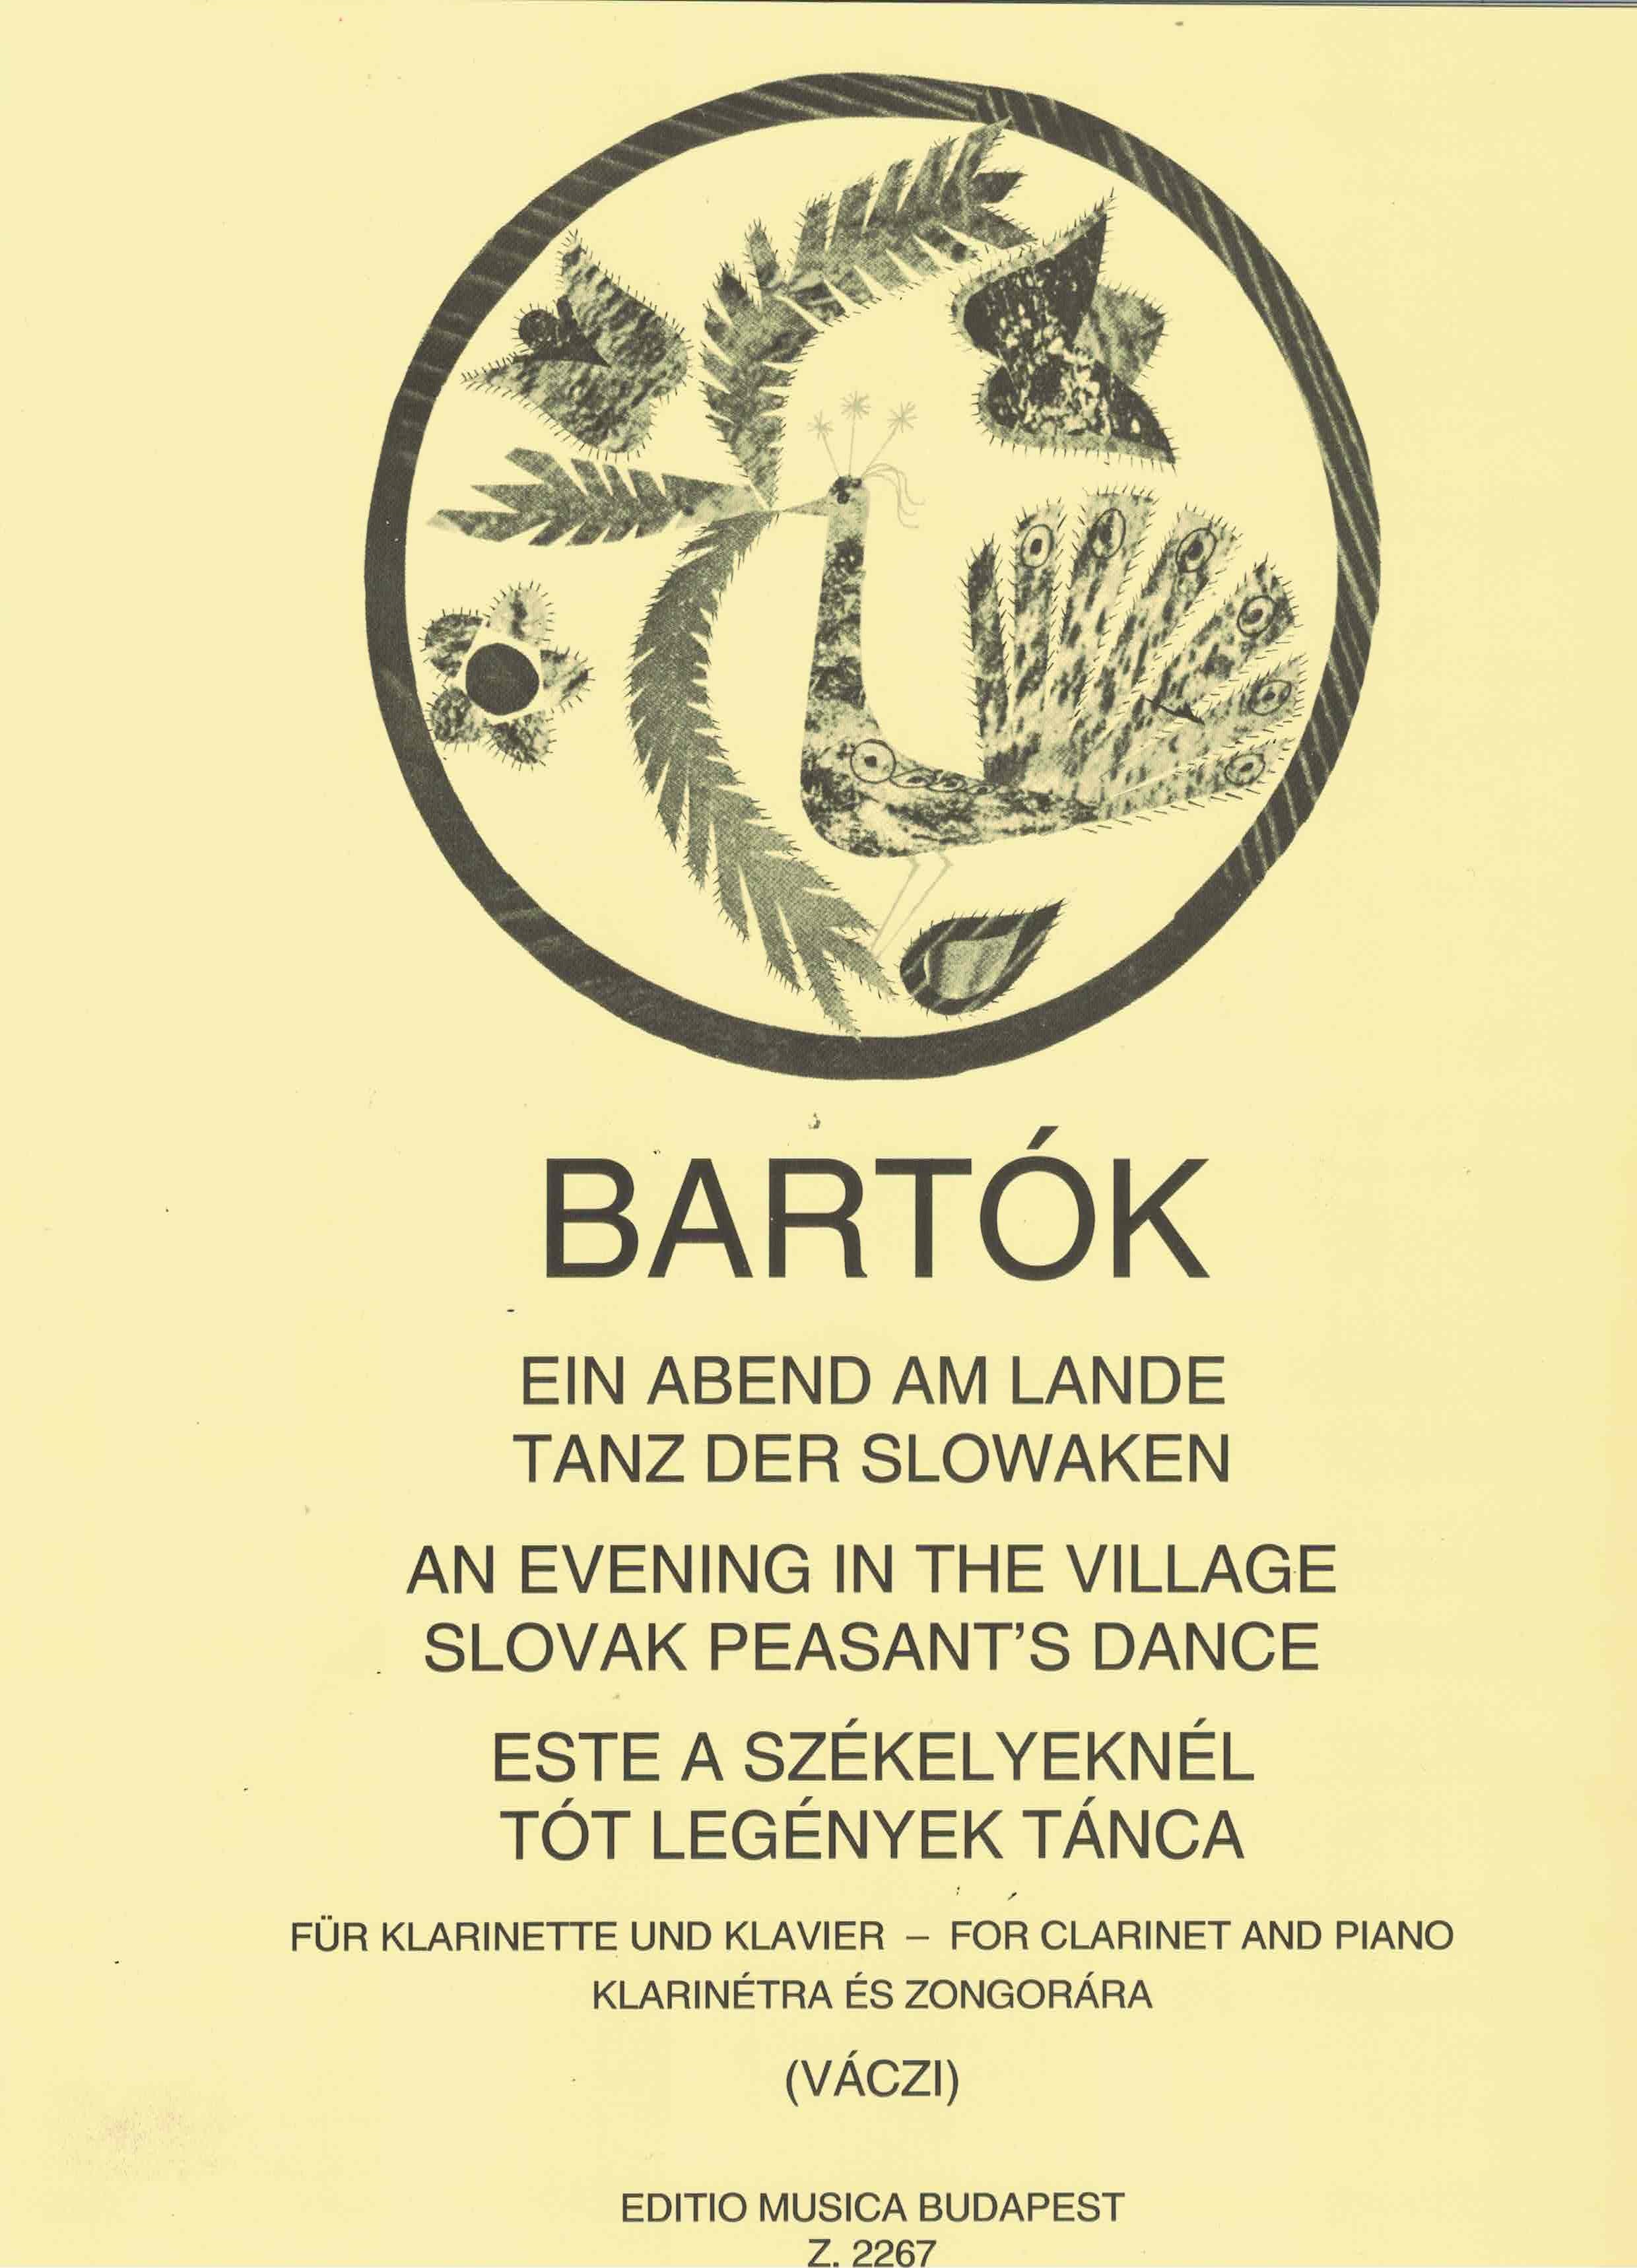 Ein Abend am Lande - Bartok, Klarinette/Klavier